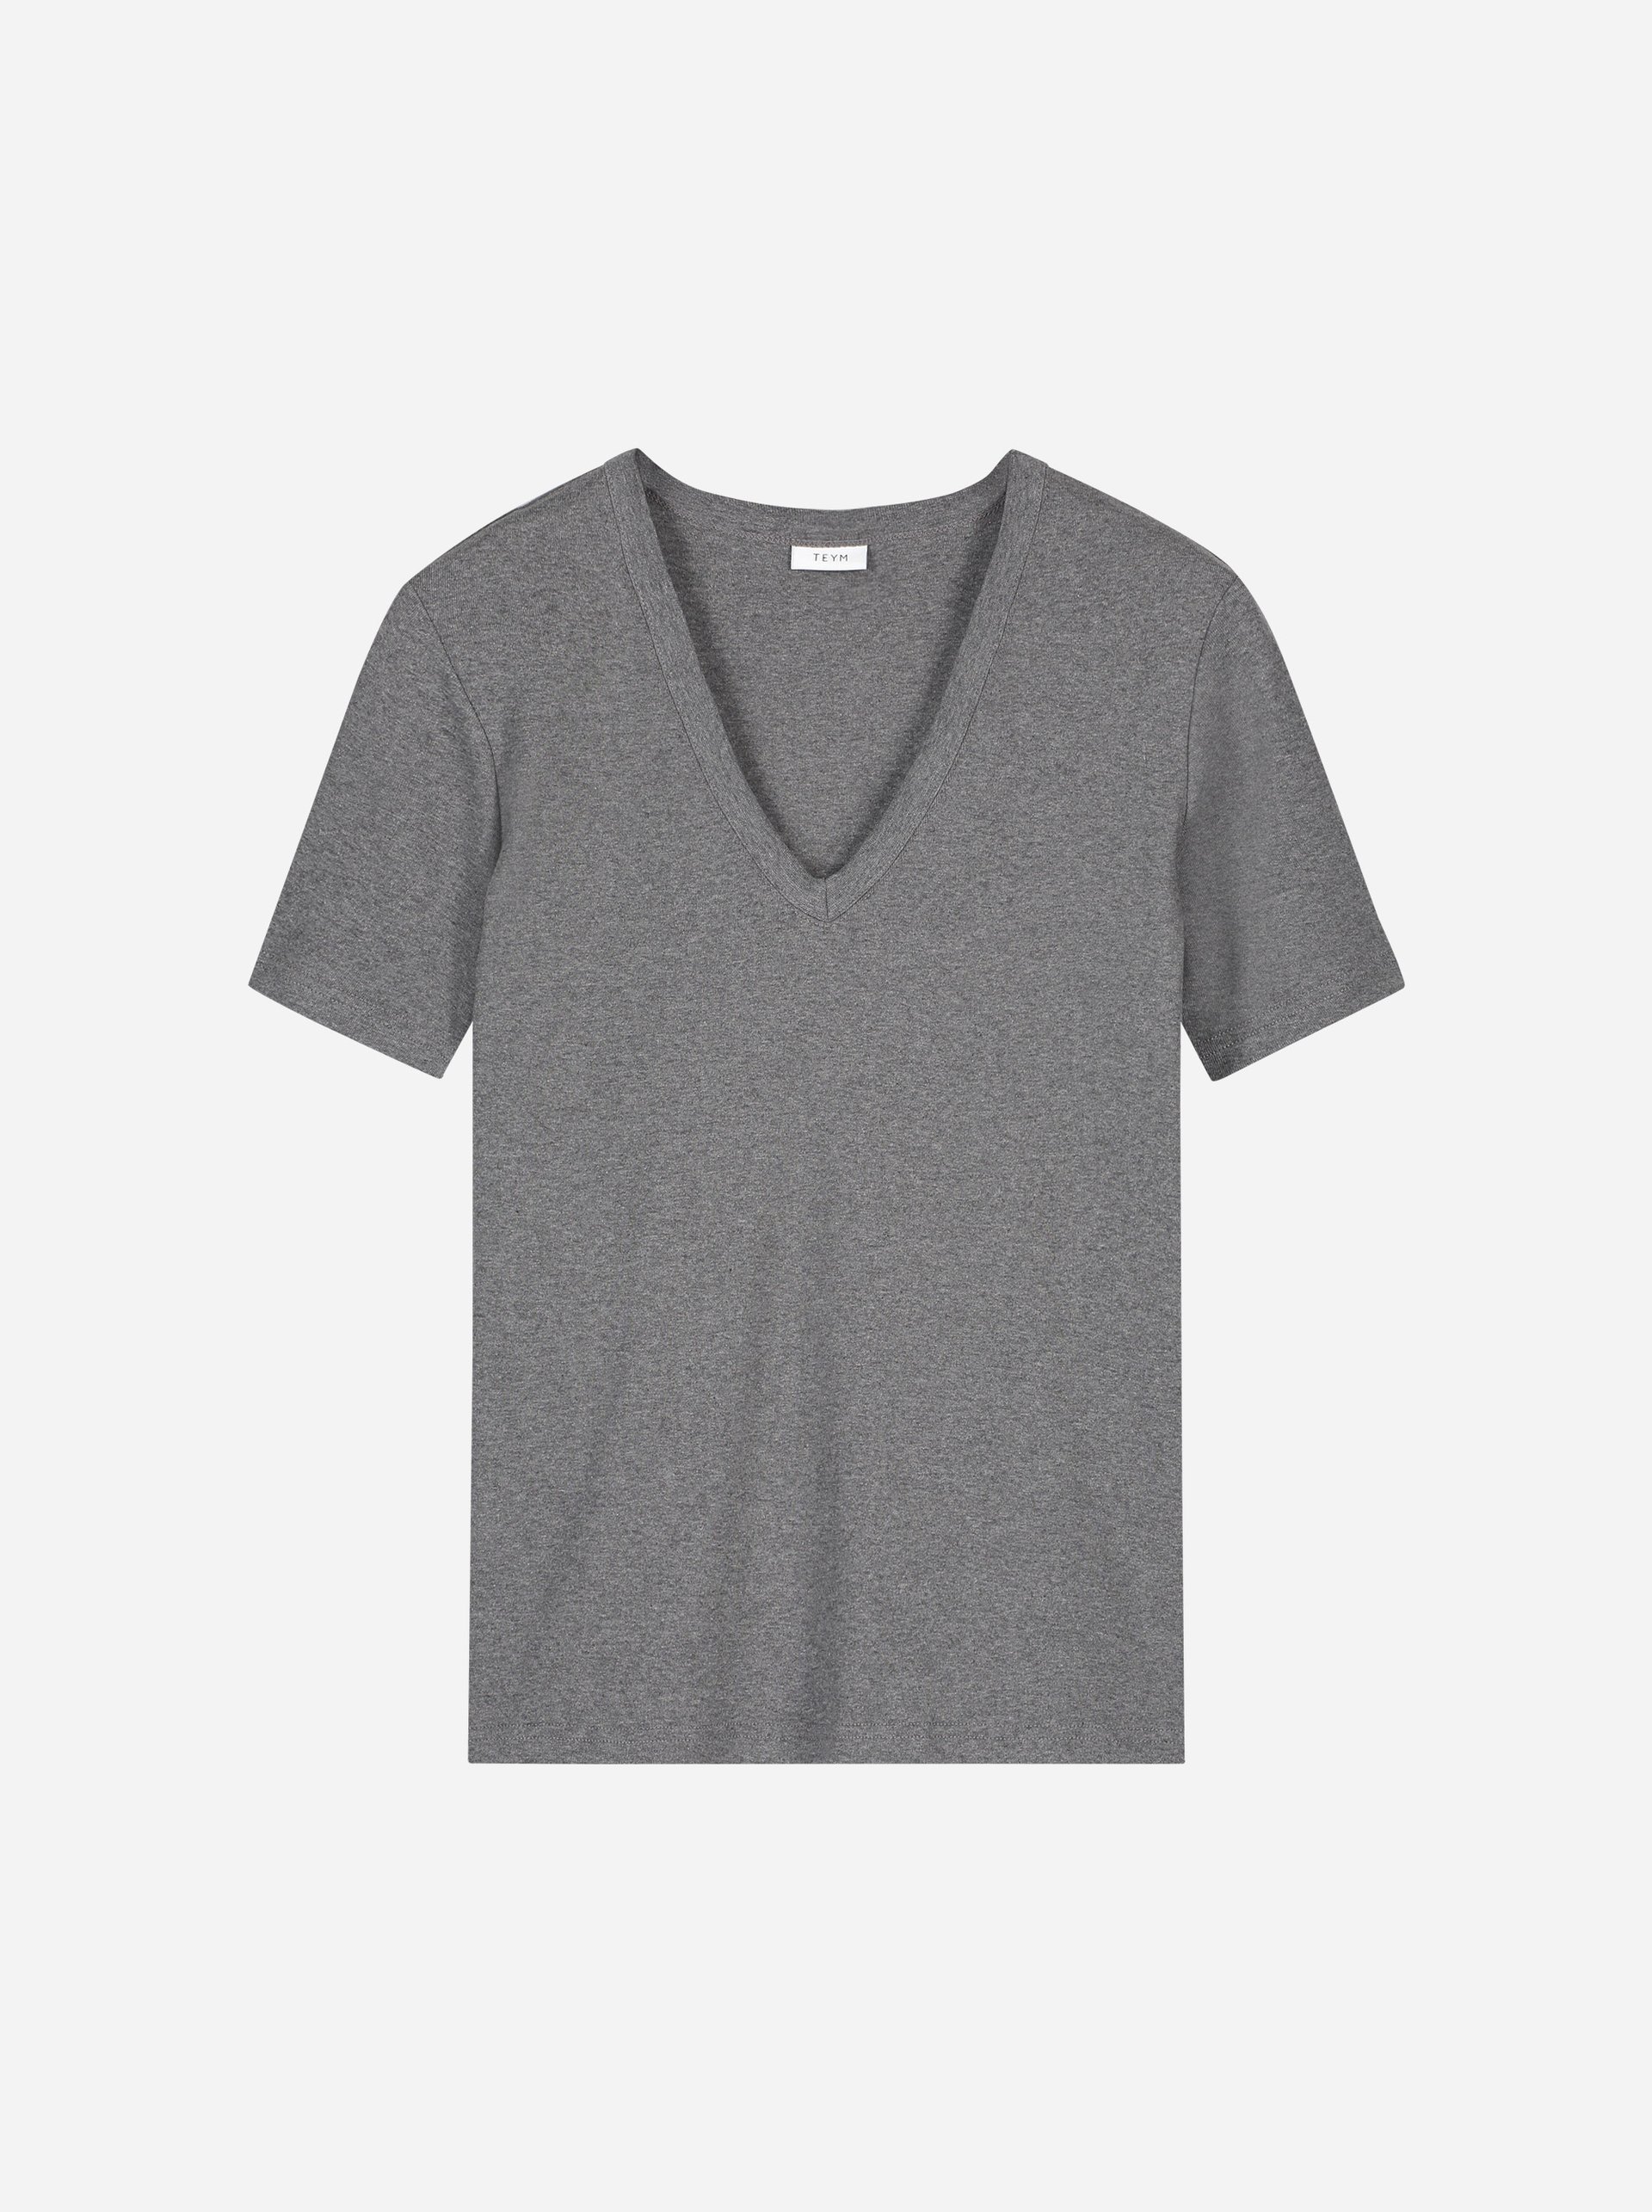 Teym - The T-Shirt - V-Neck - Women - Melange grey - 4B